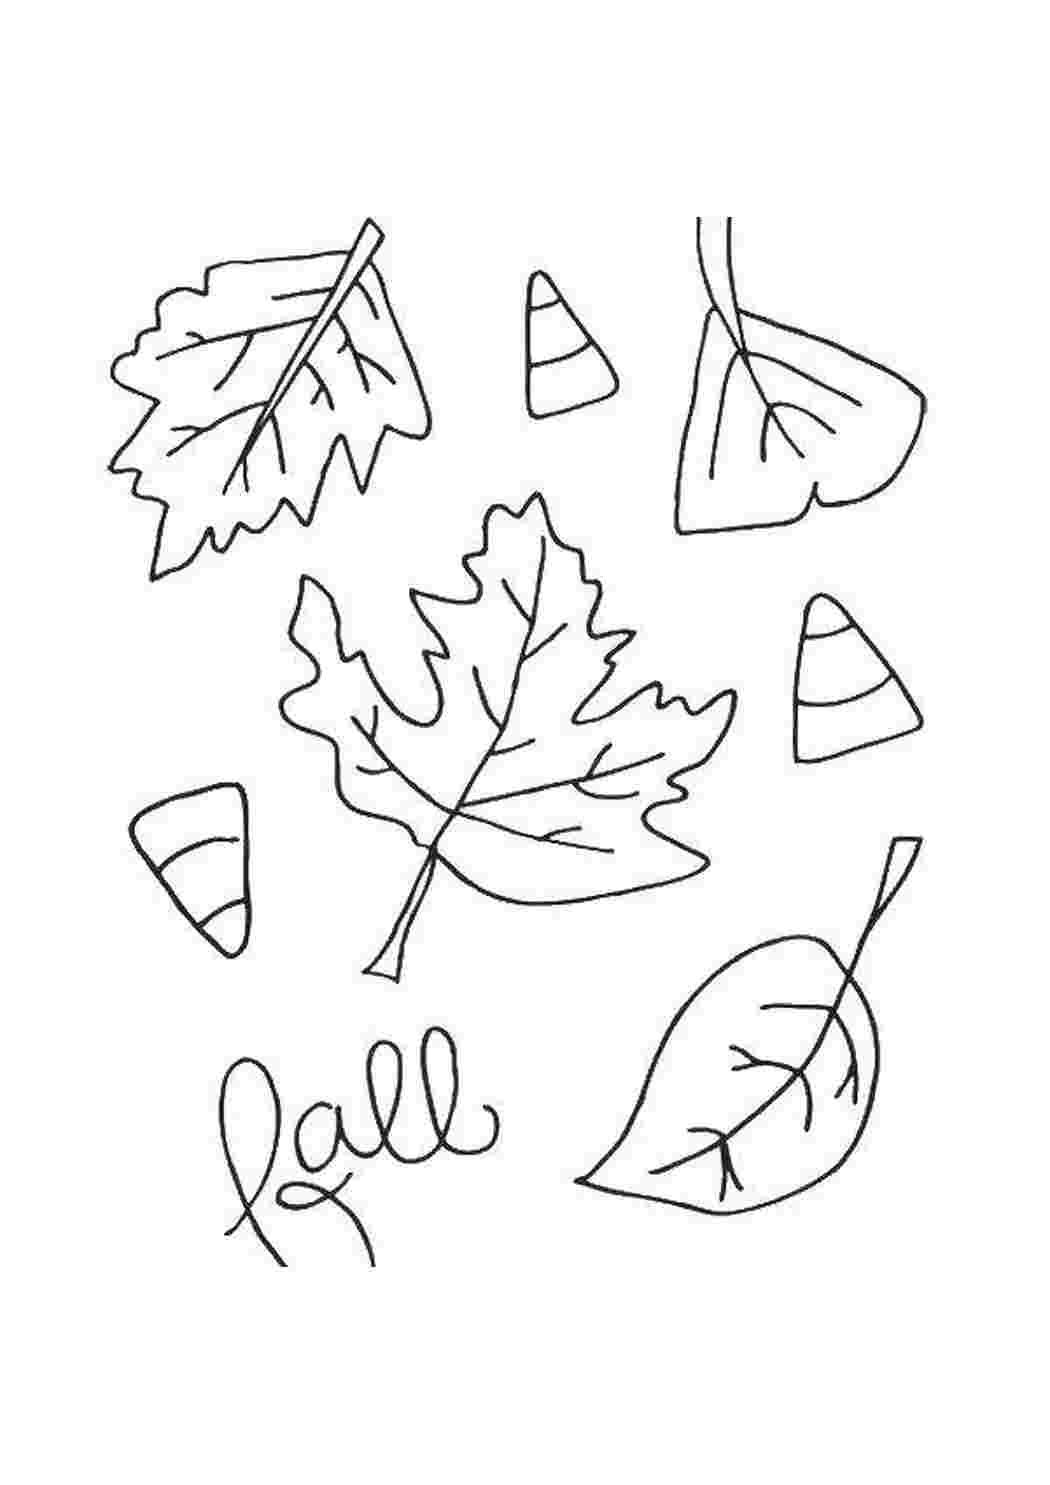 Раскрась листочки. Трафареты осенних листьев. Листочки раскраска. Раскраска листьев. Раскраска листья деревьев для детей.